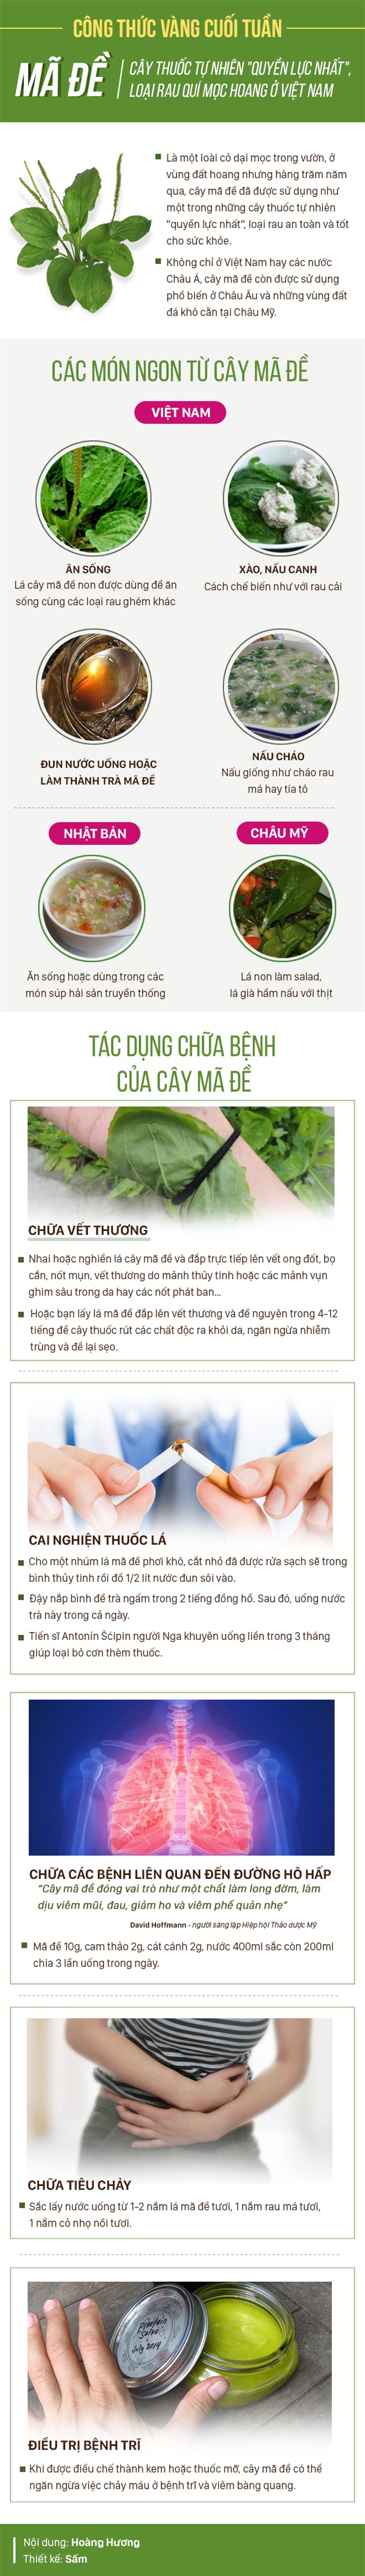 Một trong những cây thuốc quyền lực nhất thế giới: Người Việt tiện tay hái là có ngay - Ảnh 1.